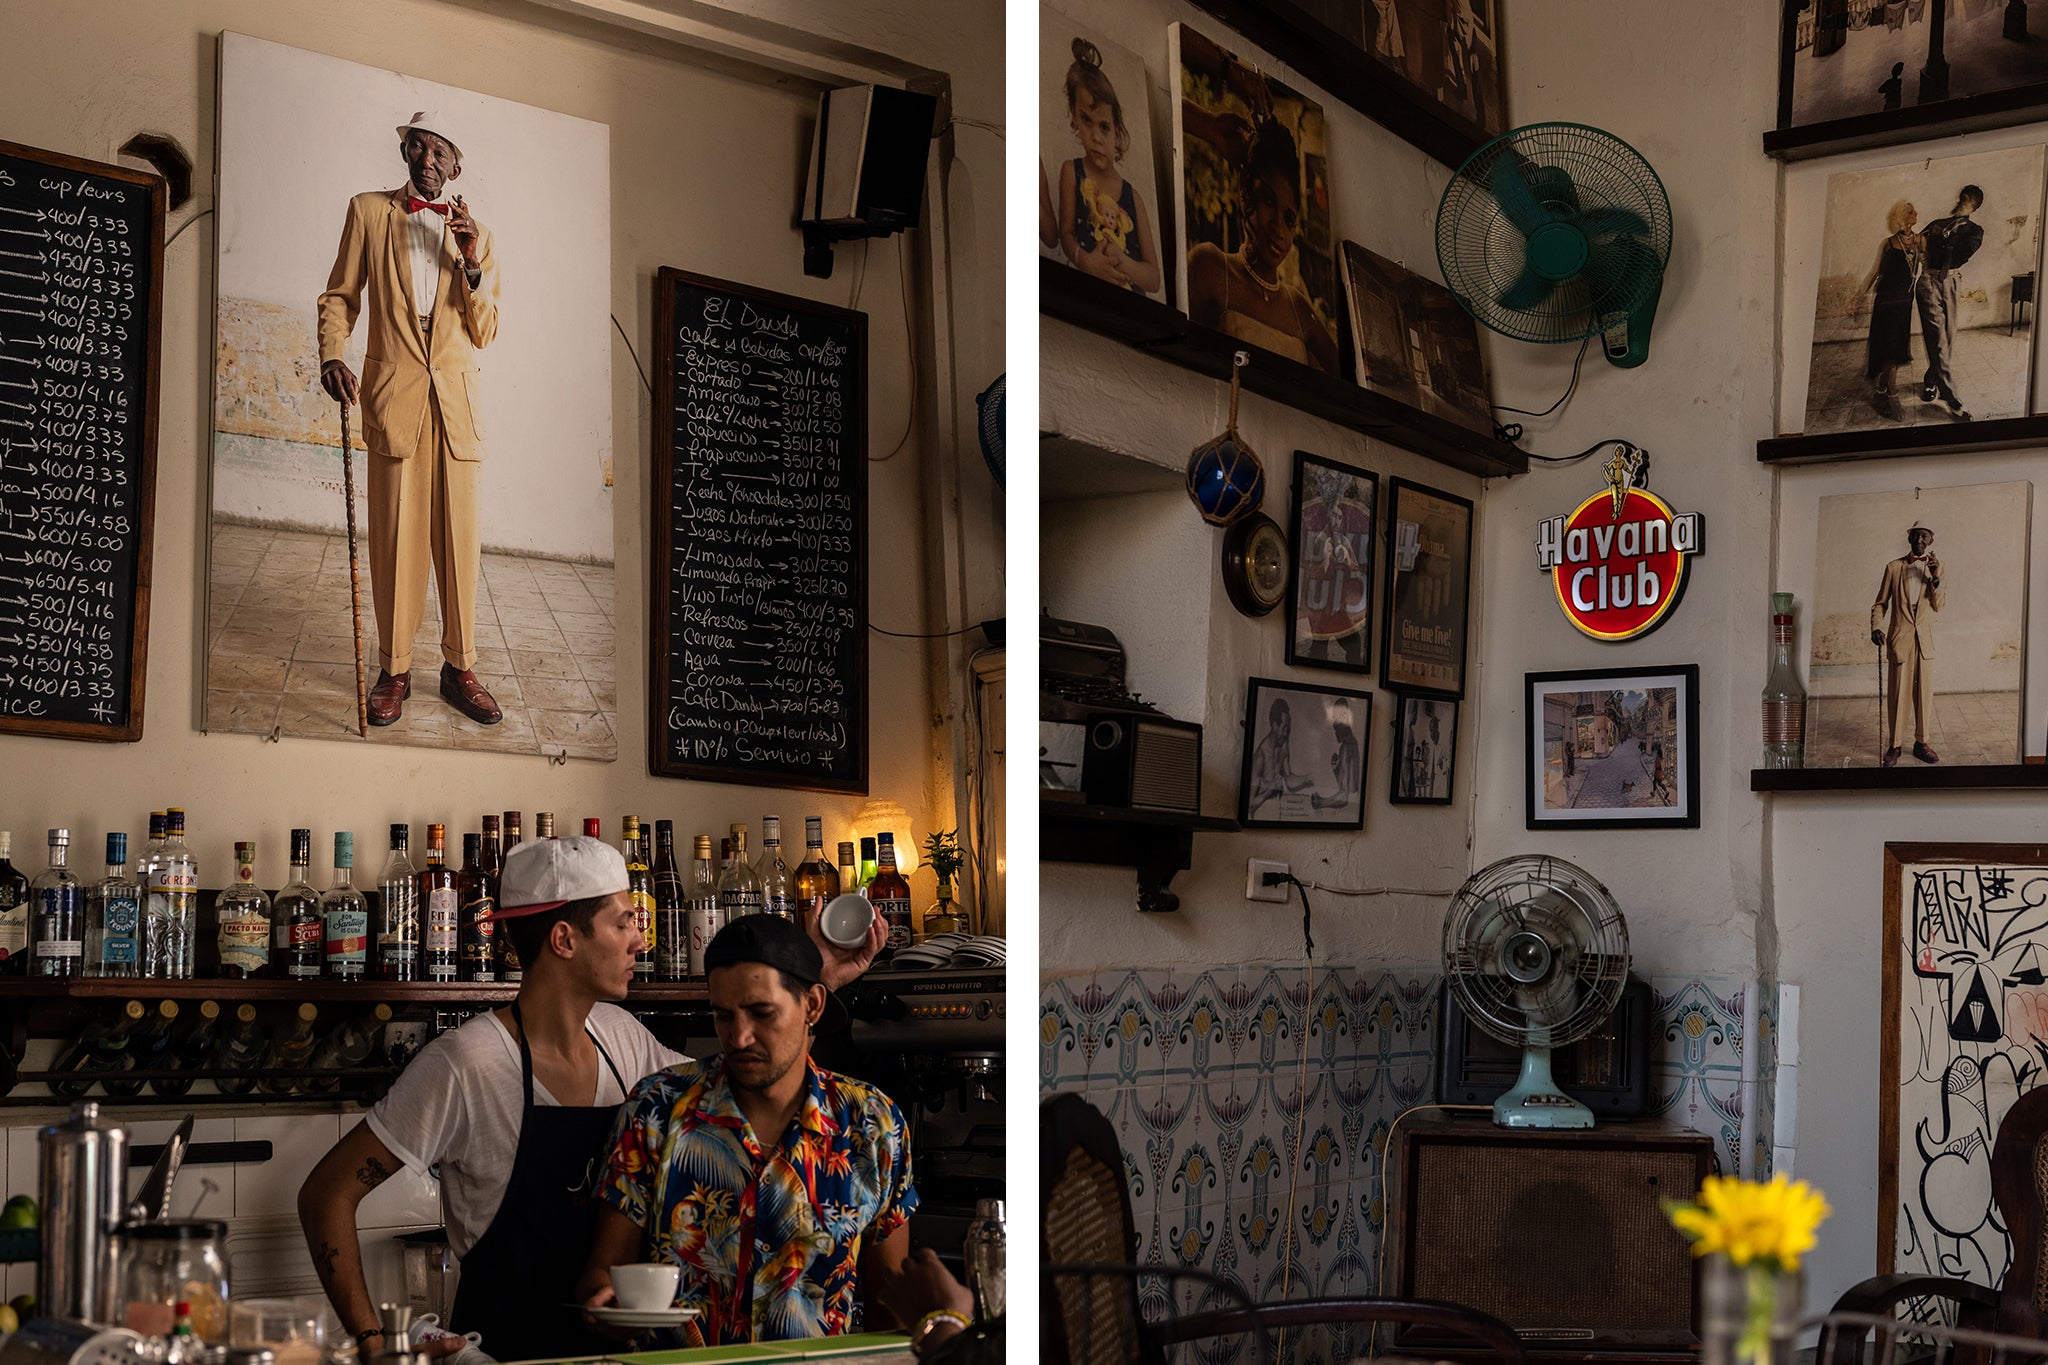 El Dandy, Havana